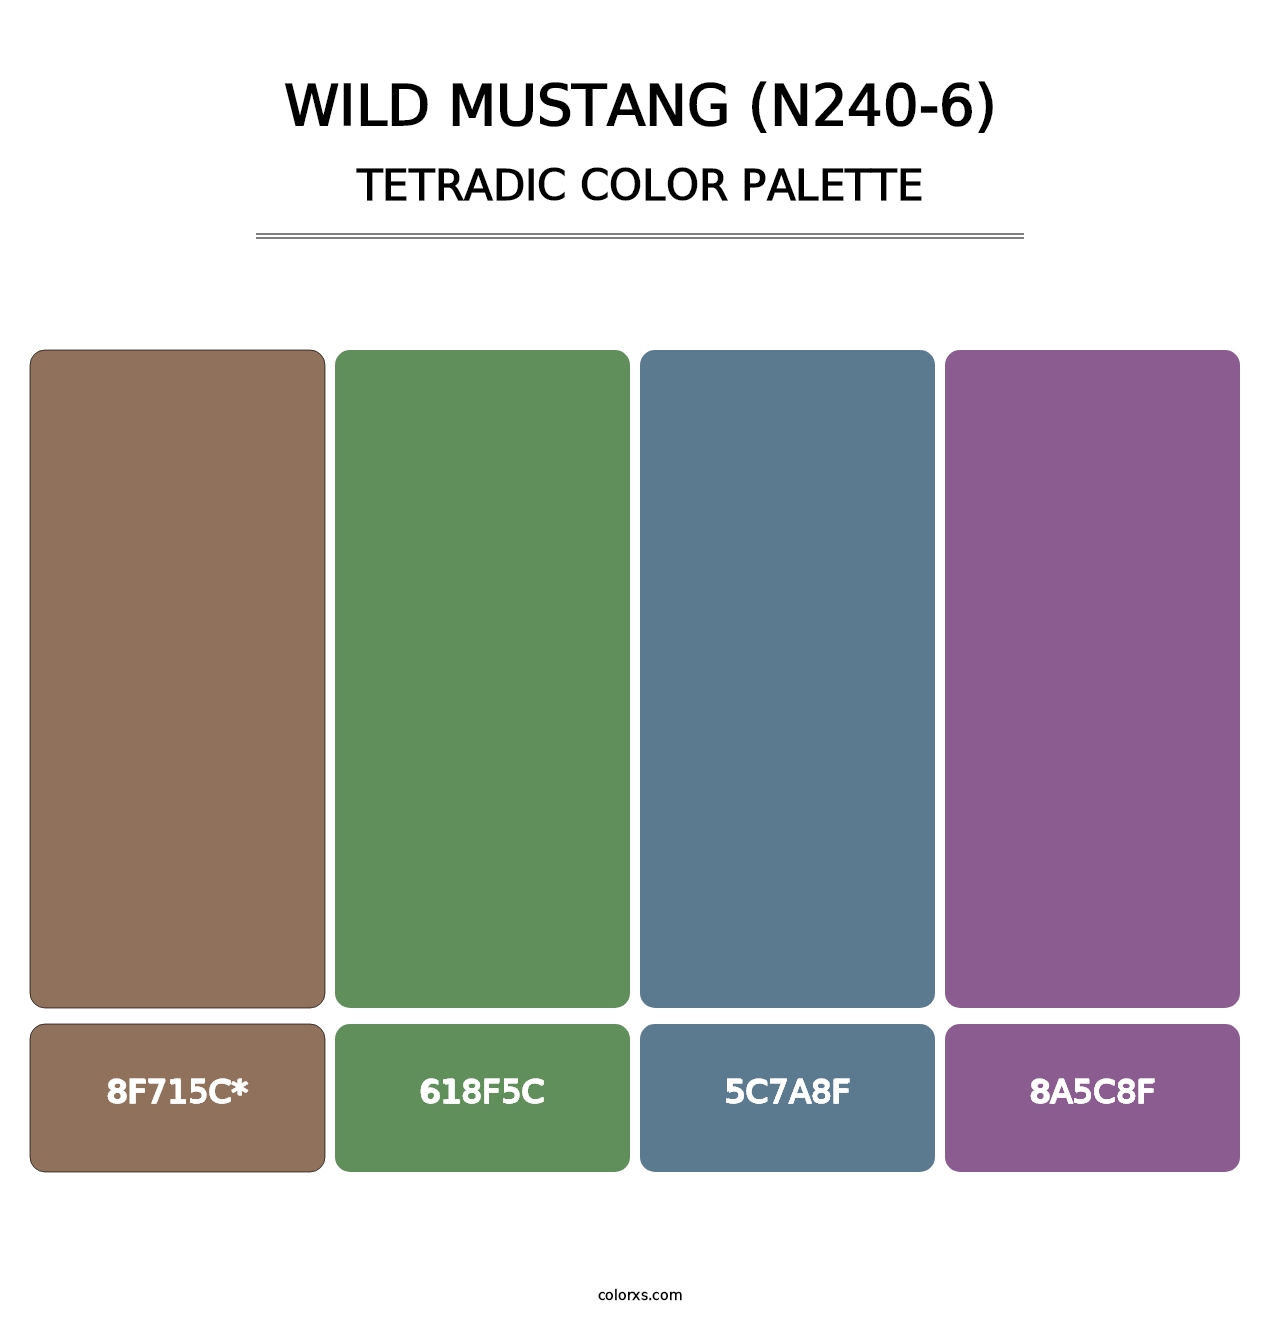 Wild Mustang (N240-6) - Tetradic Color Palette